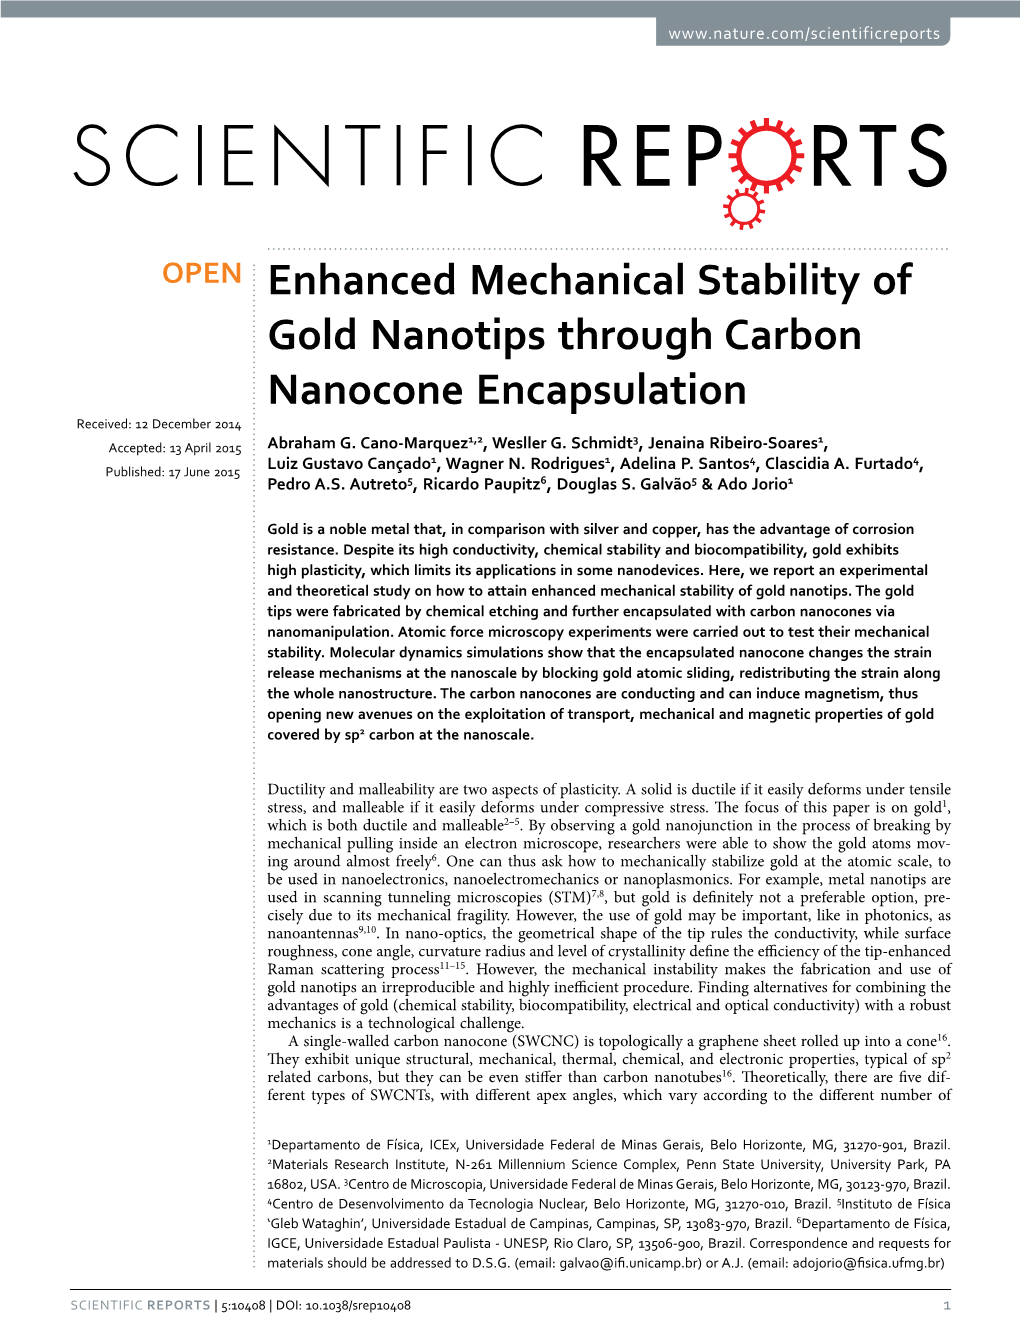 Enhanced Mechanical Stability of Gold Nanotips Through Carbon Nanocone Encapsulation Received: 12 December 2014 1,2 3 1 Accepted: 13 April 2015 Abraham G